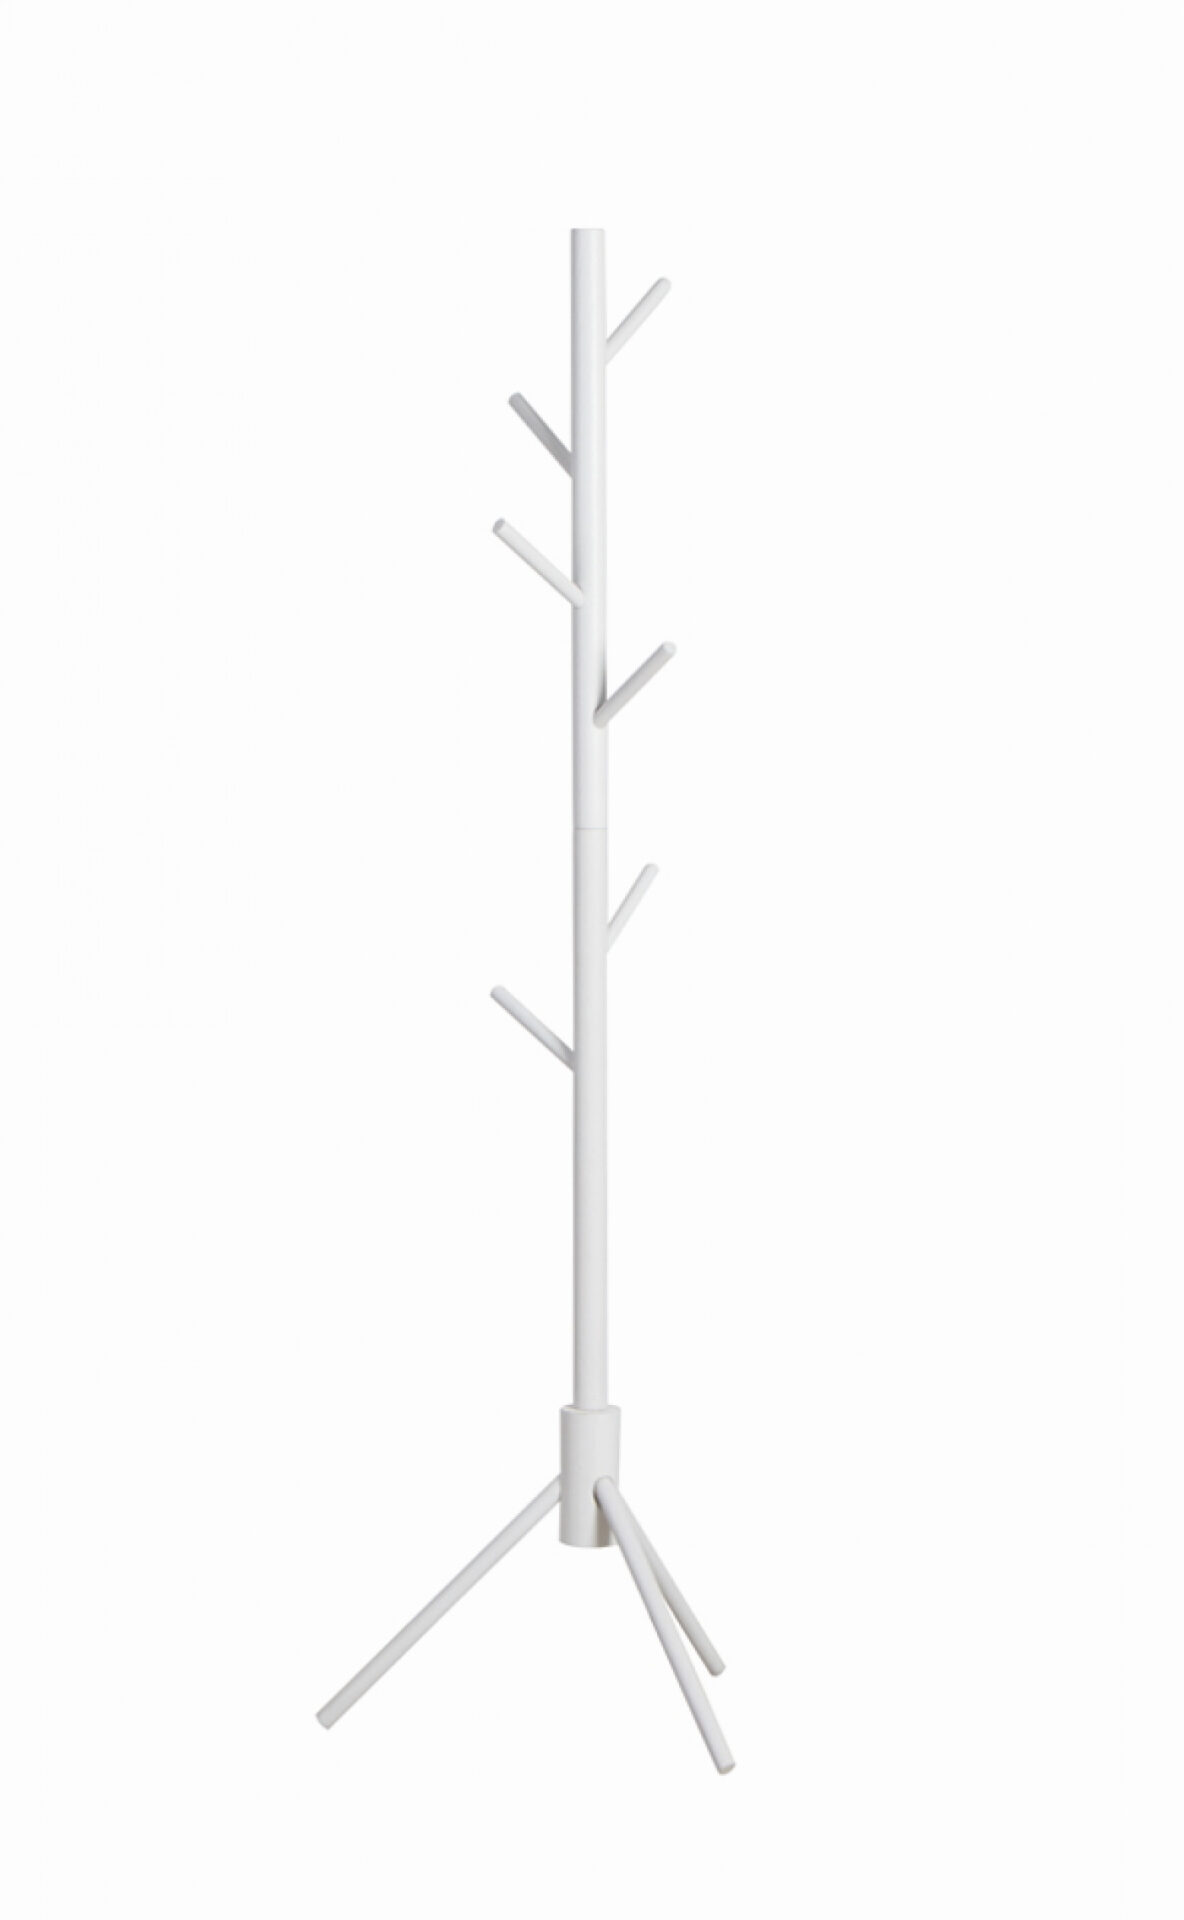 Kapstok kinderkamer staande kinderkapstok 130 cm hoog wit - Plein